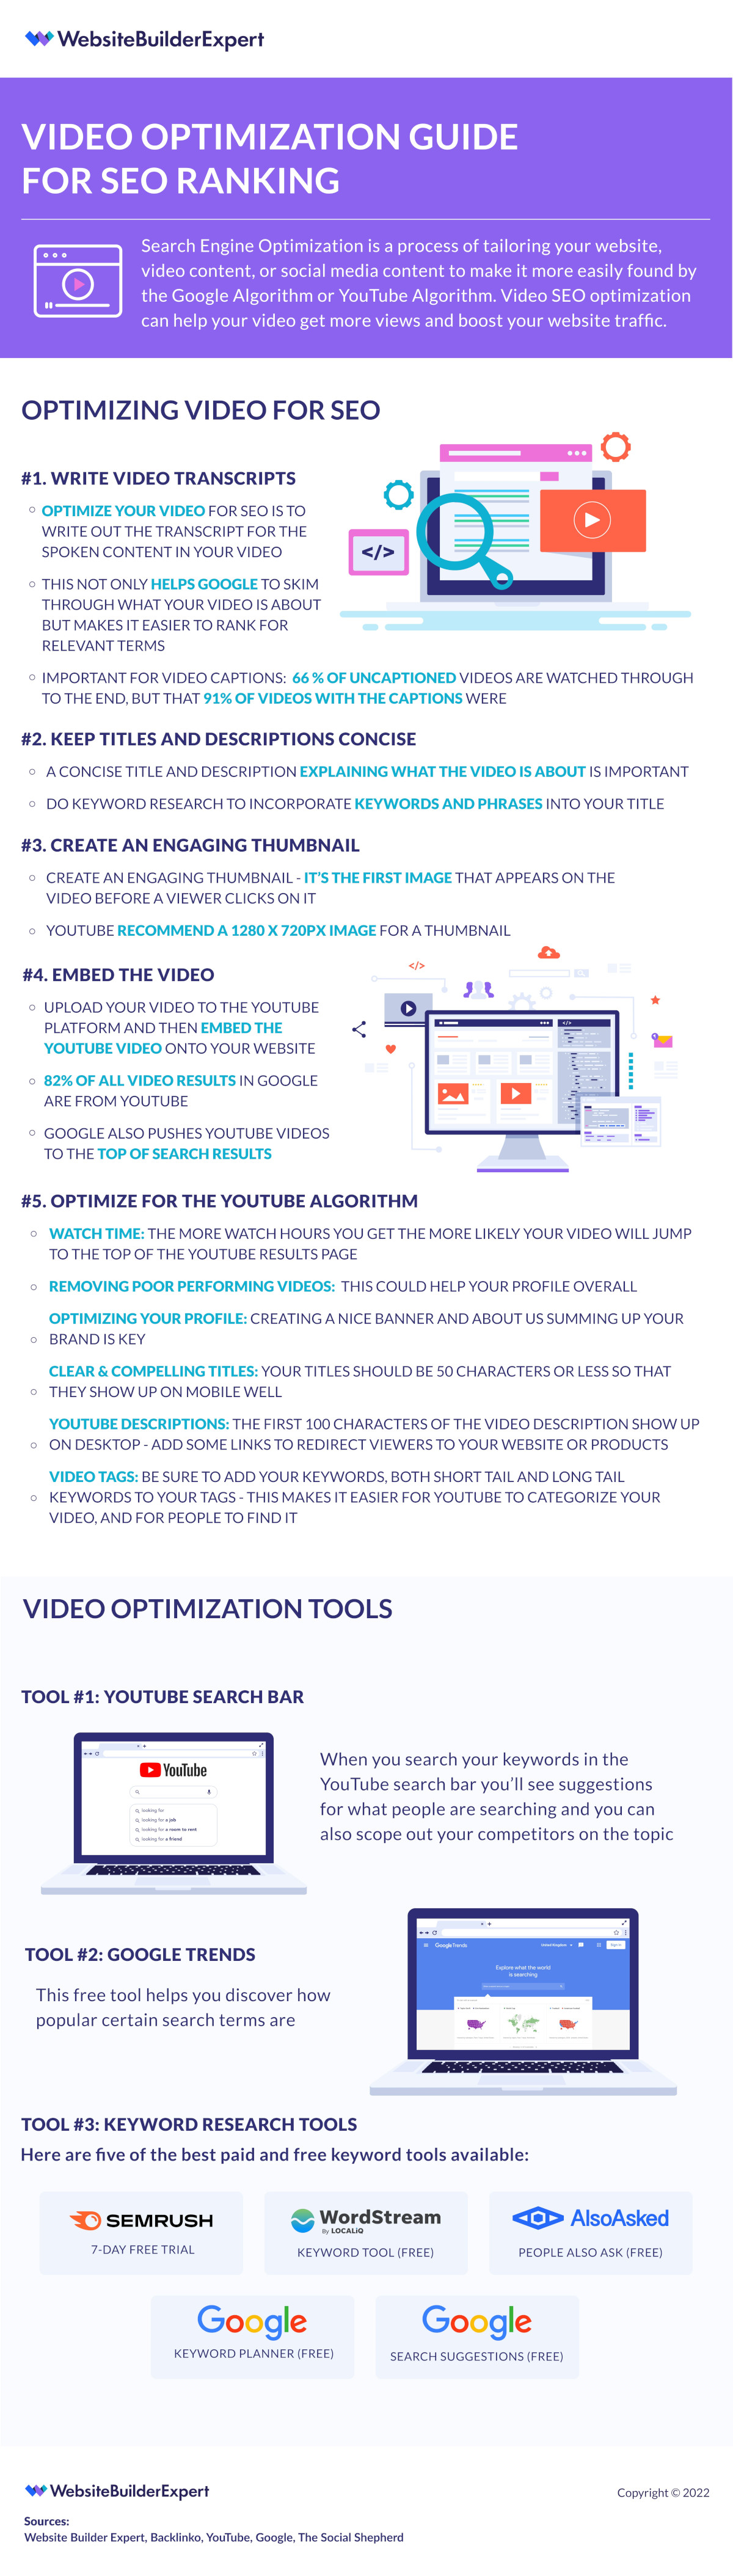 Website Builder Expert guide for optimising videos for SEO